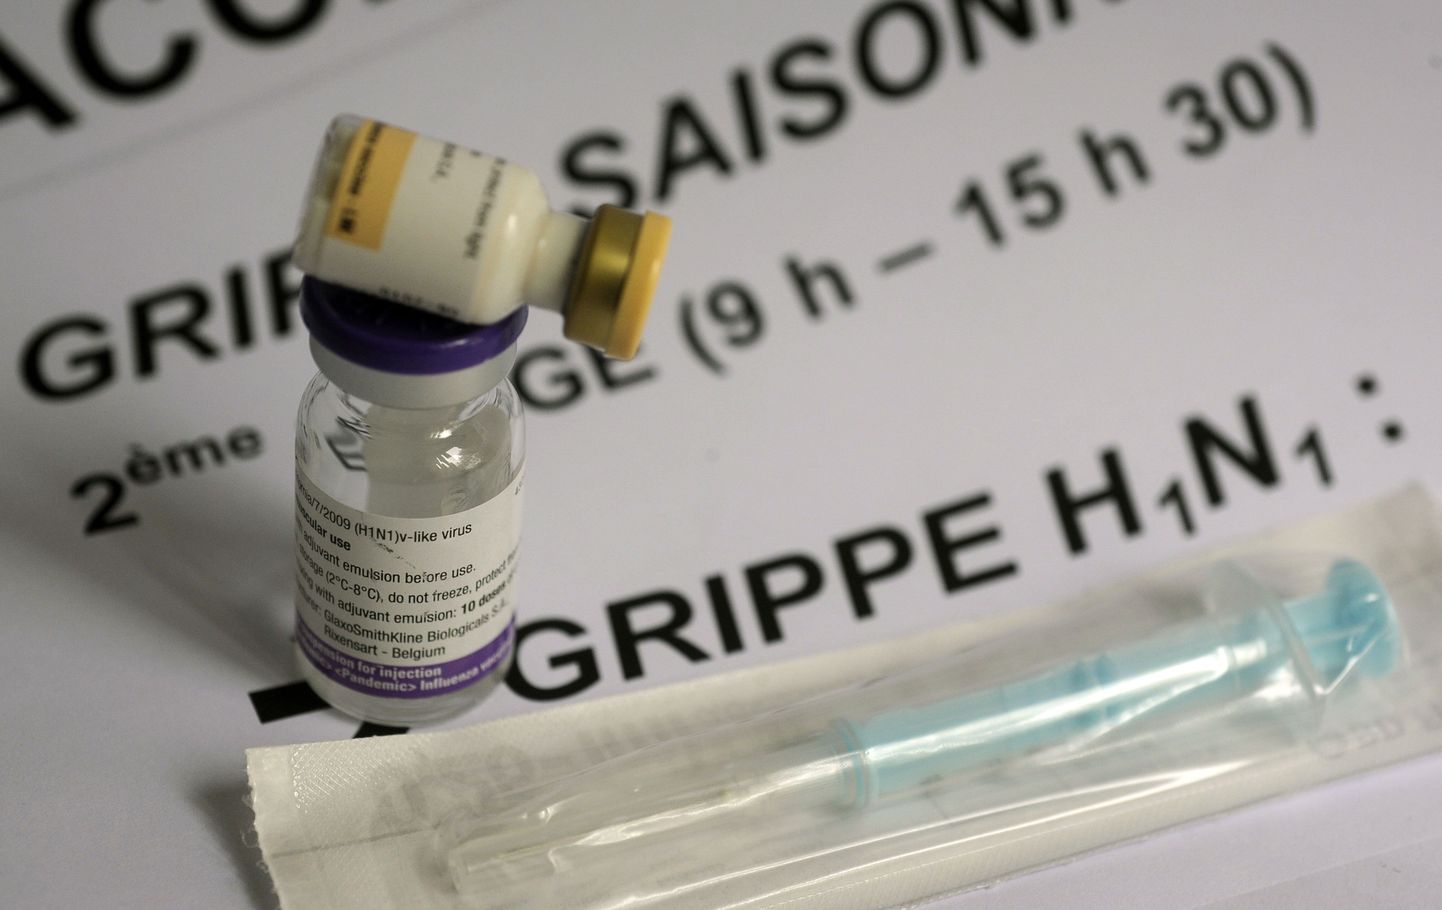 Soome kasutab vaktsineerimisel Pandemrixit, mida toodab Briti ravimihiid GlaxoSmithKline.